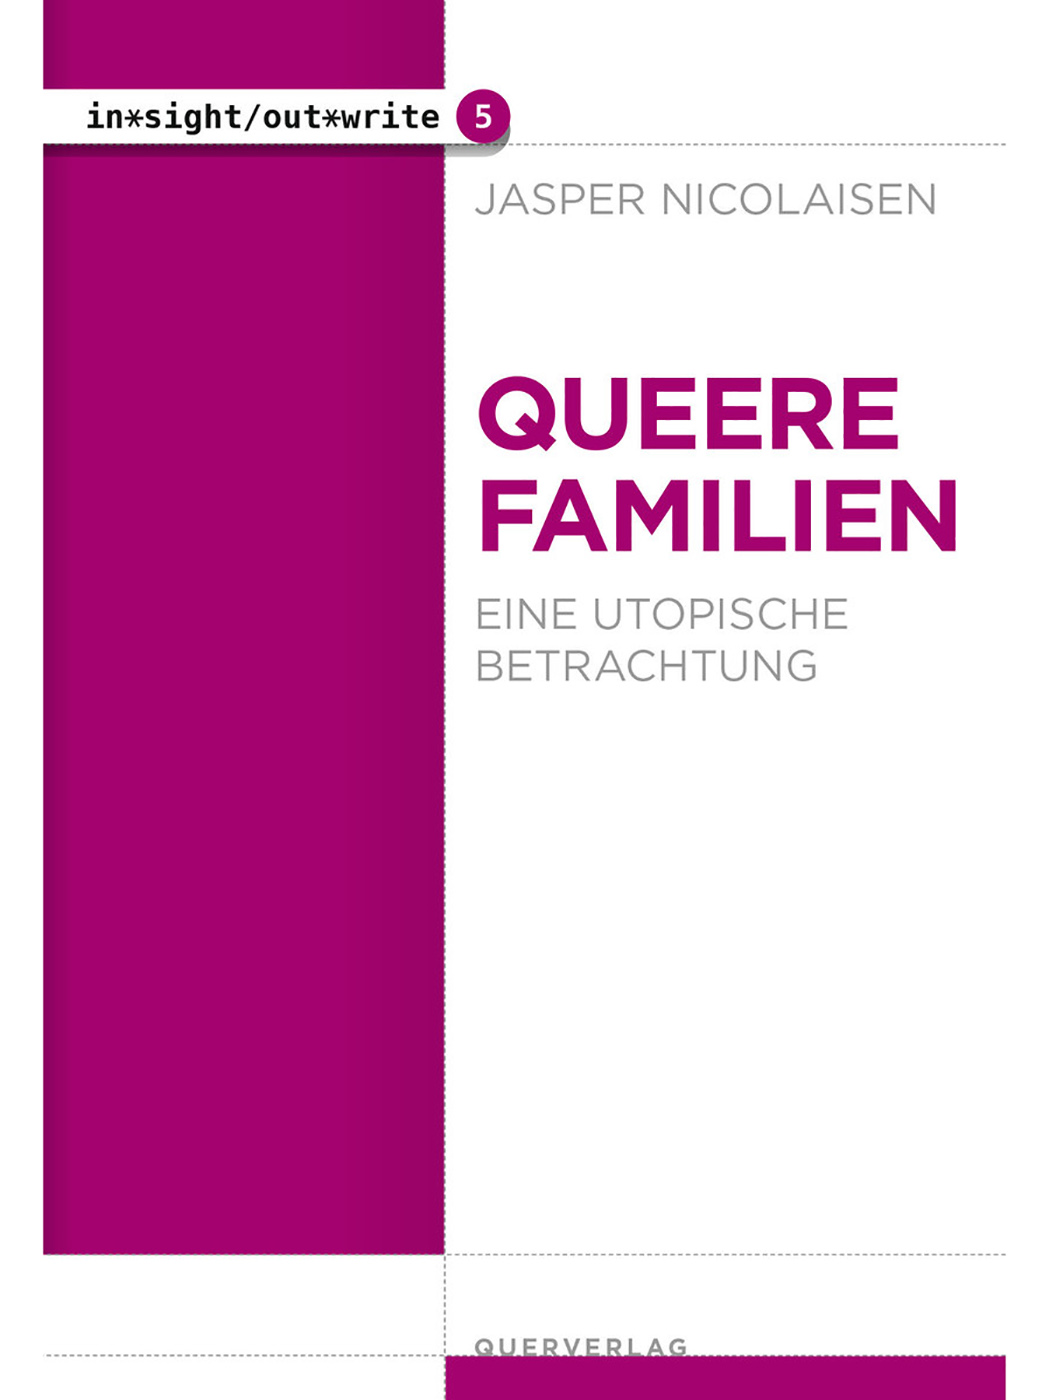 Jasper Nicolaisen | Queere Familien. Eine utopische Betrachtung